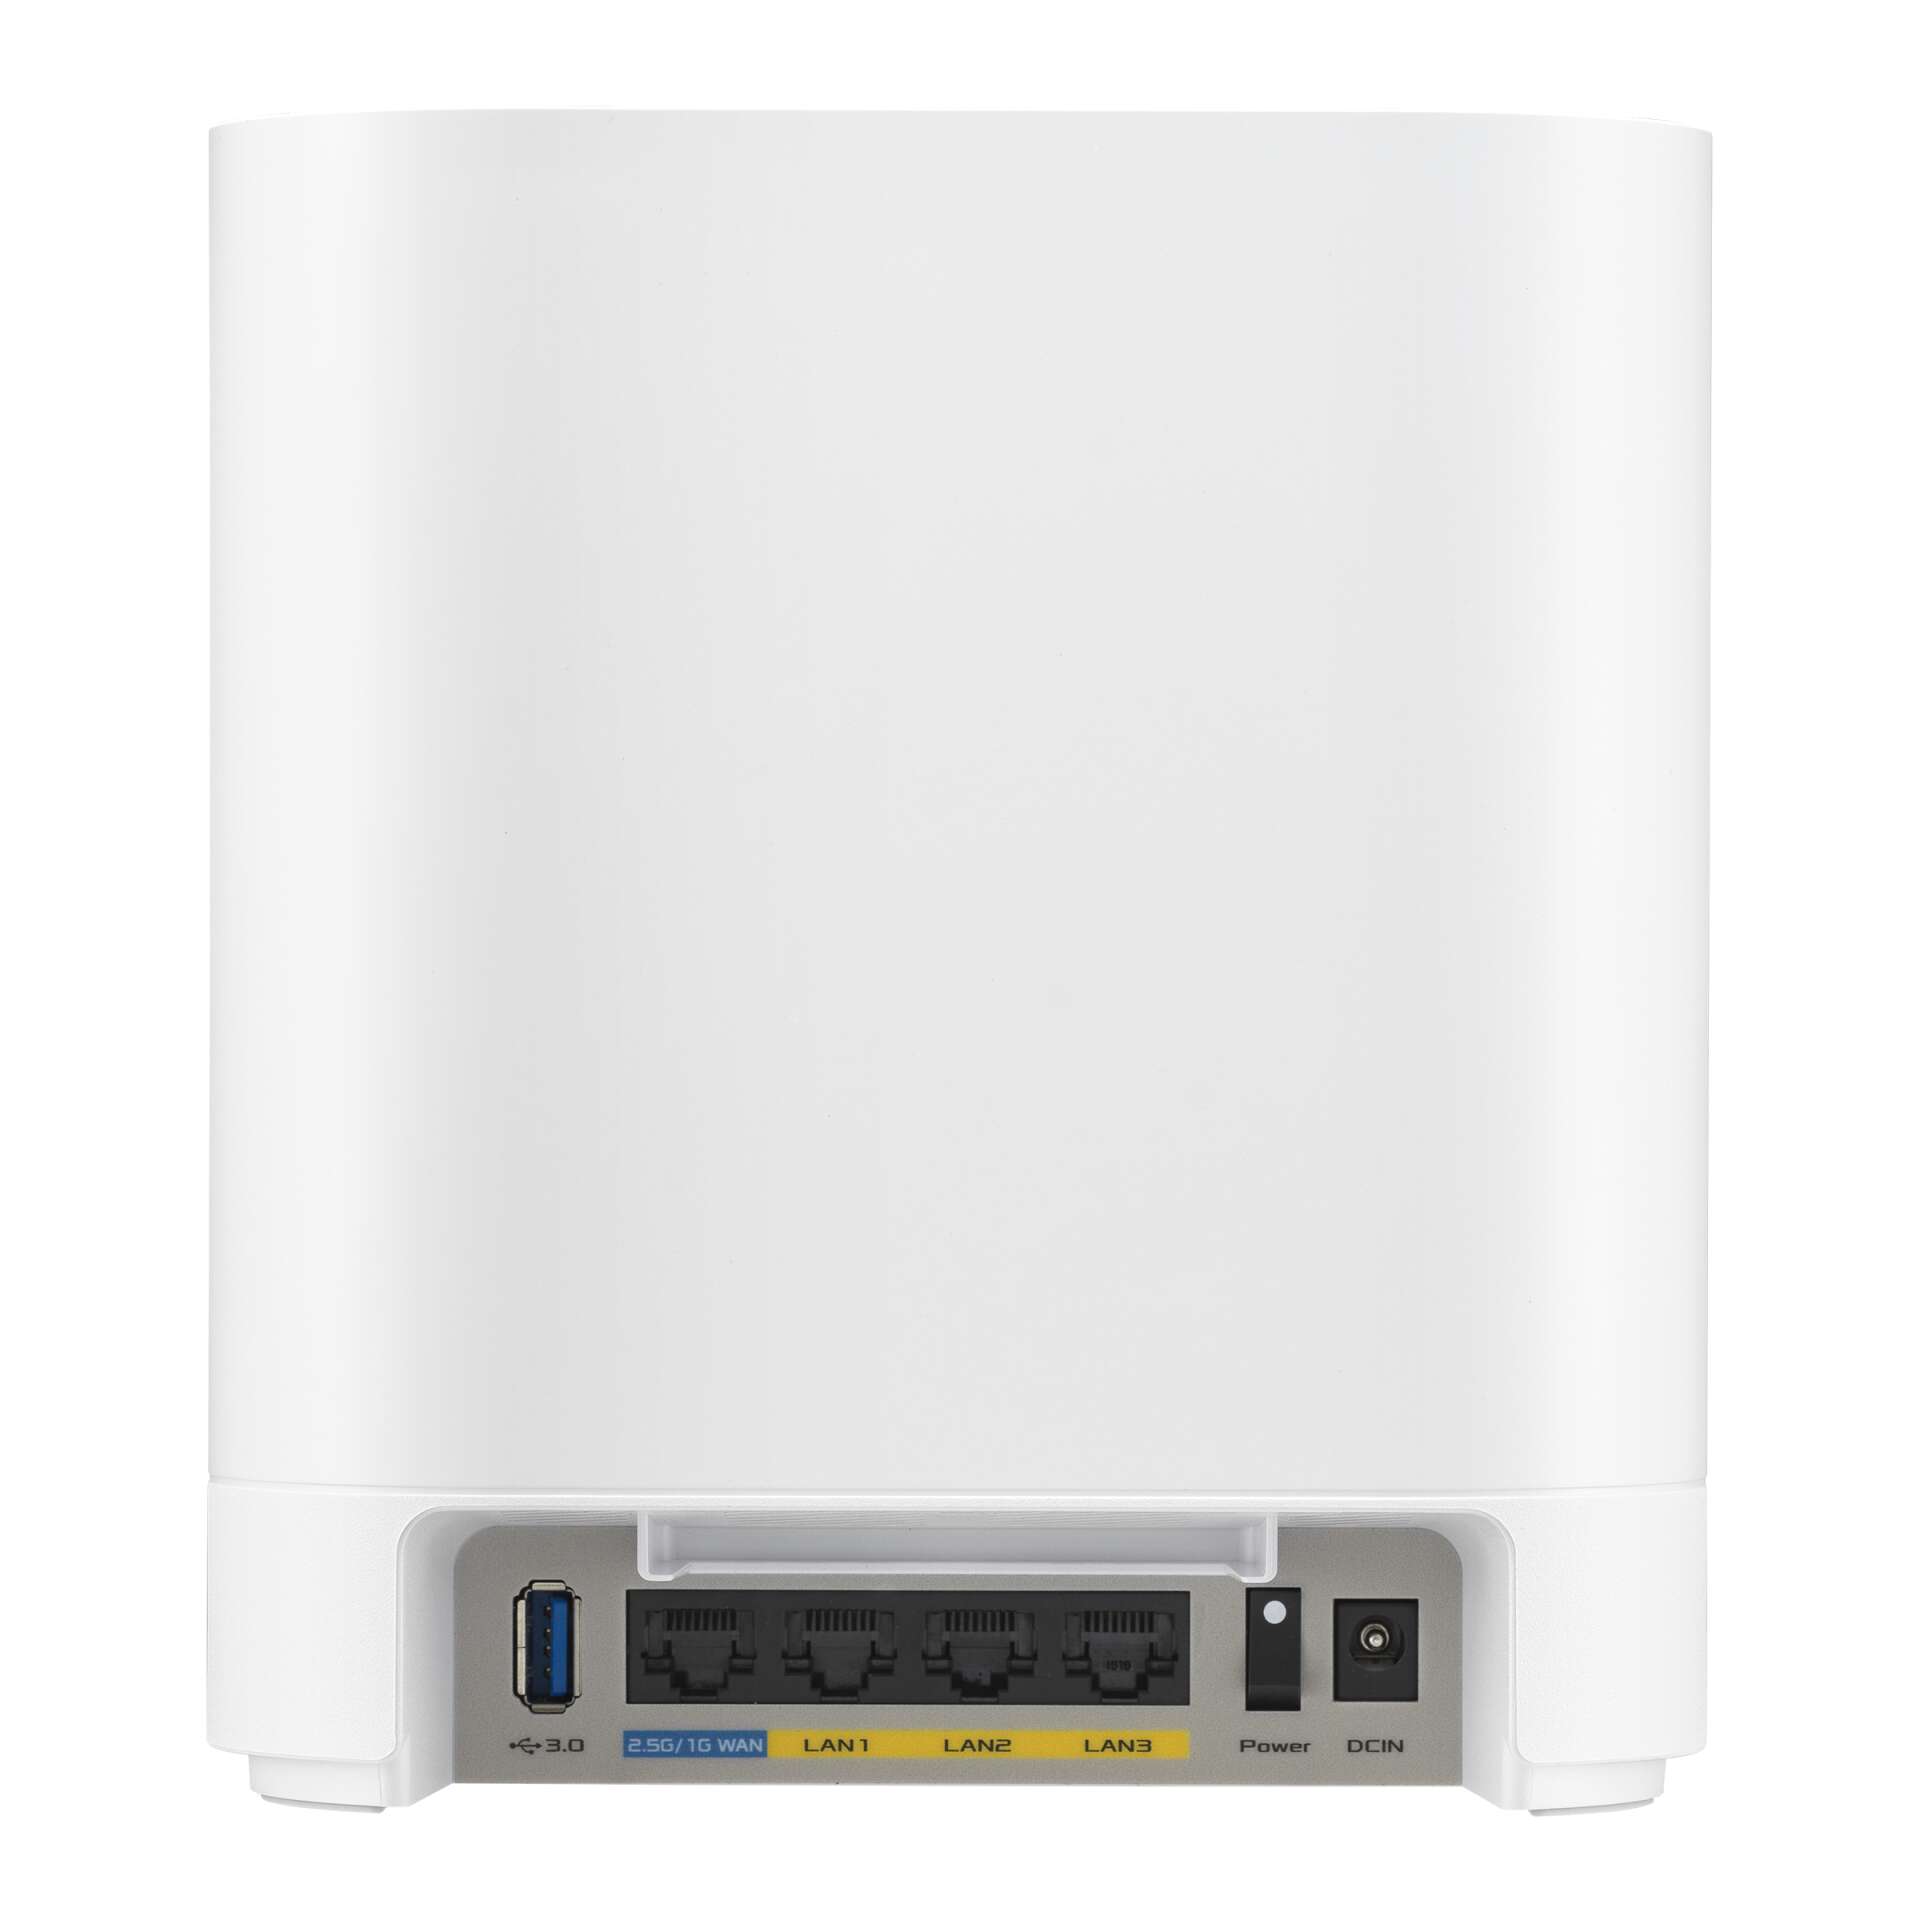 Asus expertwifi ebm68 ax7800 tri-band gigabit router (2 db)